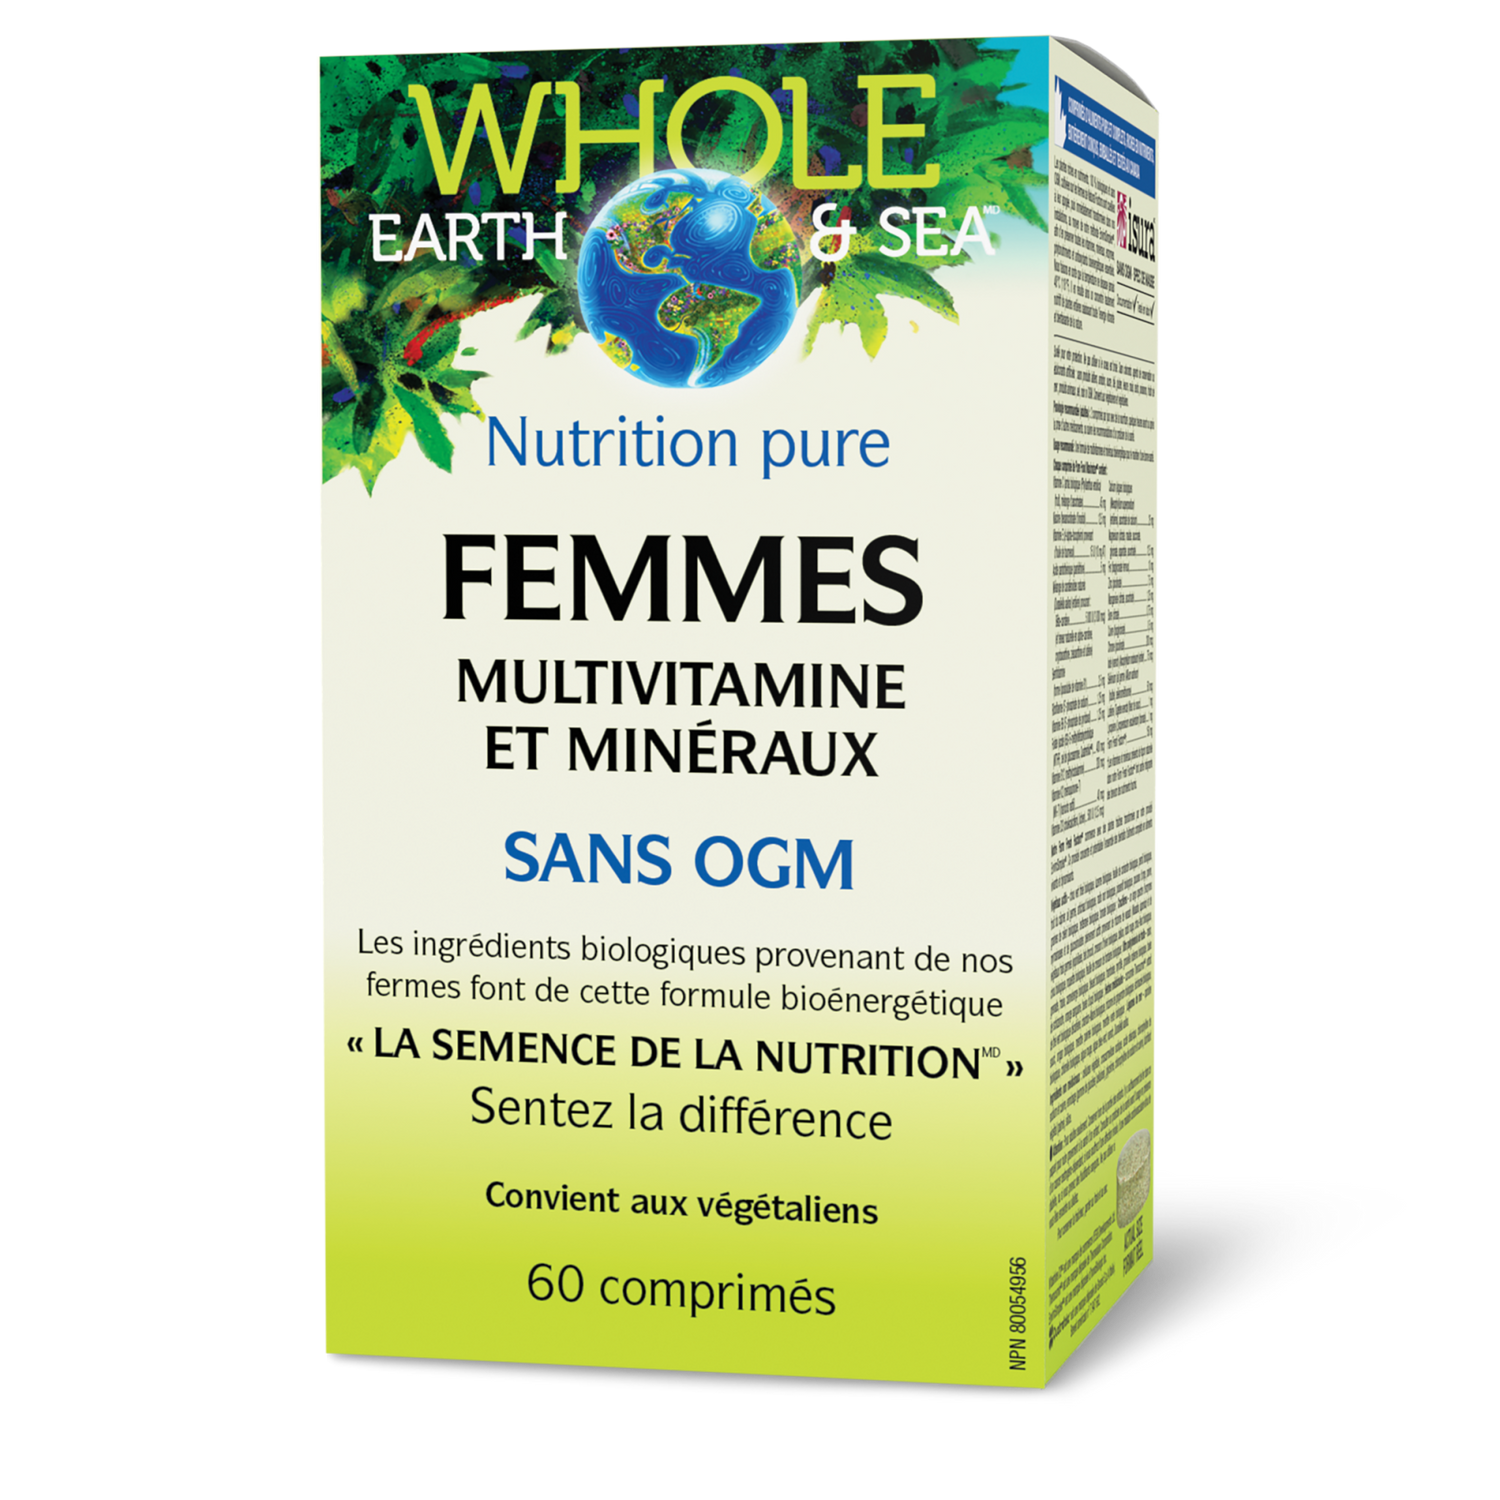 Multivitamine et minéraux Femmes, Whole Earth & Sea, Whole Earth & Sea®|v|image|35502